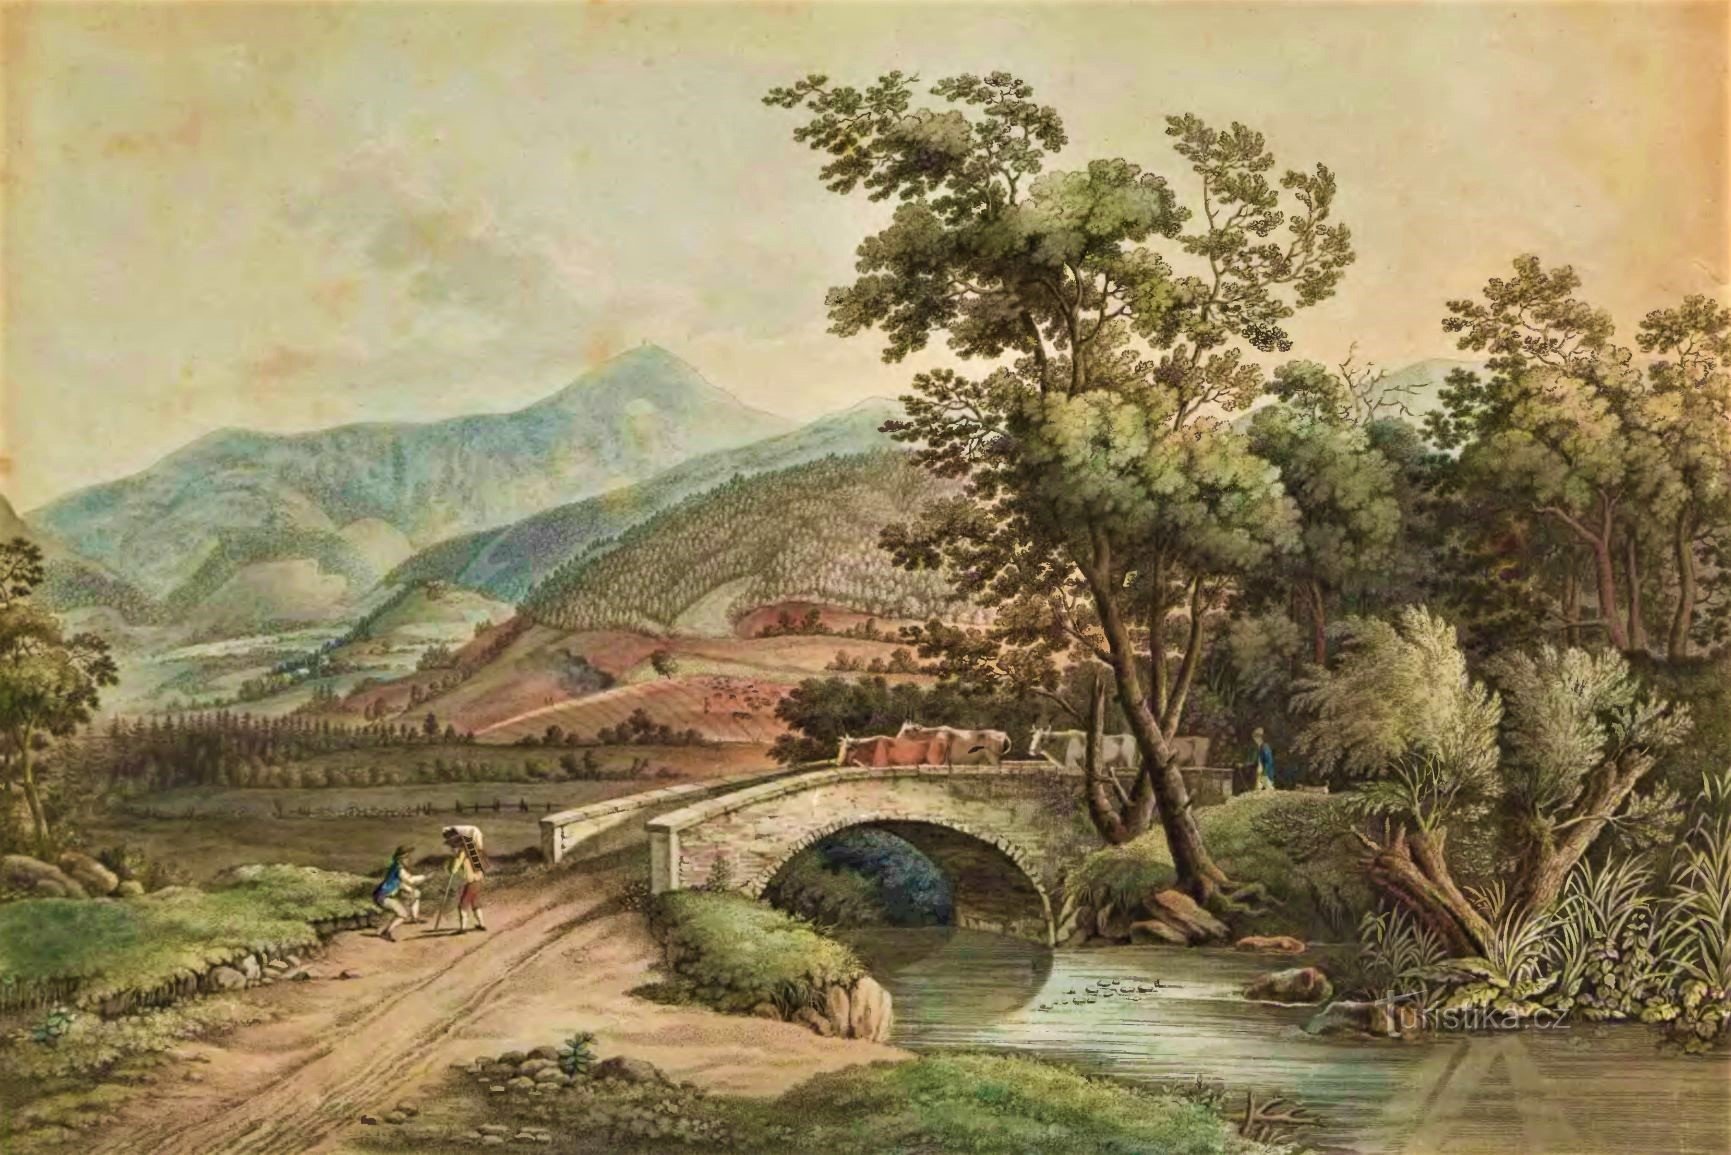 Άποψη του Sněžka από το χωριό Miłków από τις αρχές του 19ου αιώνα